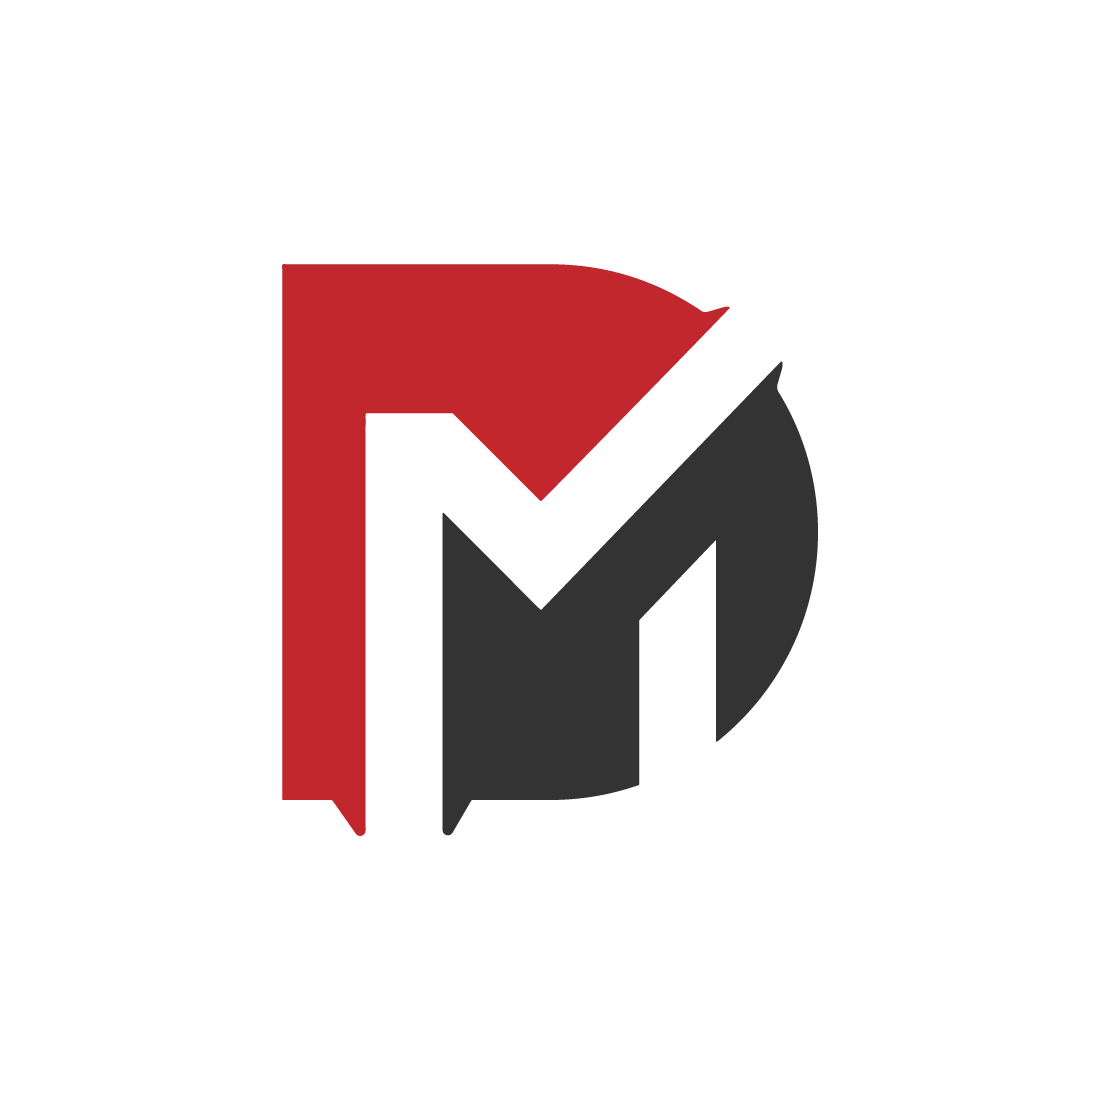 DM logo Design preview image.